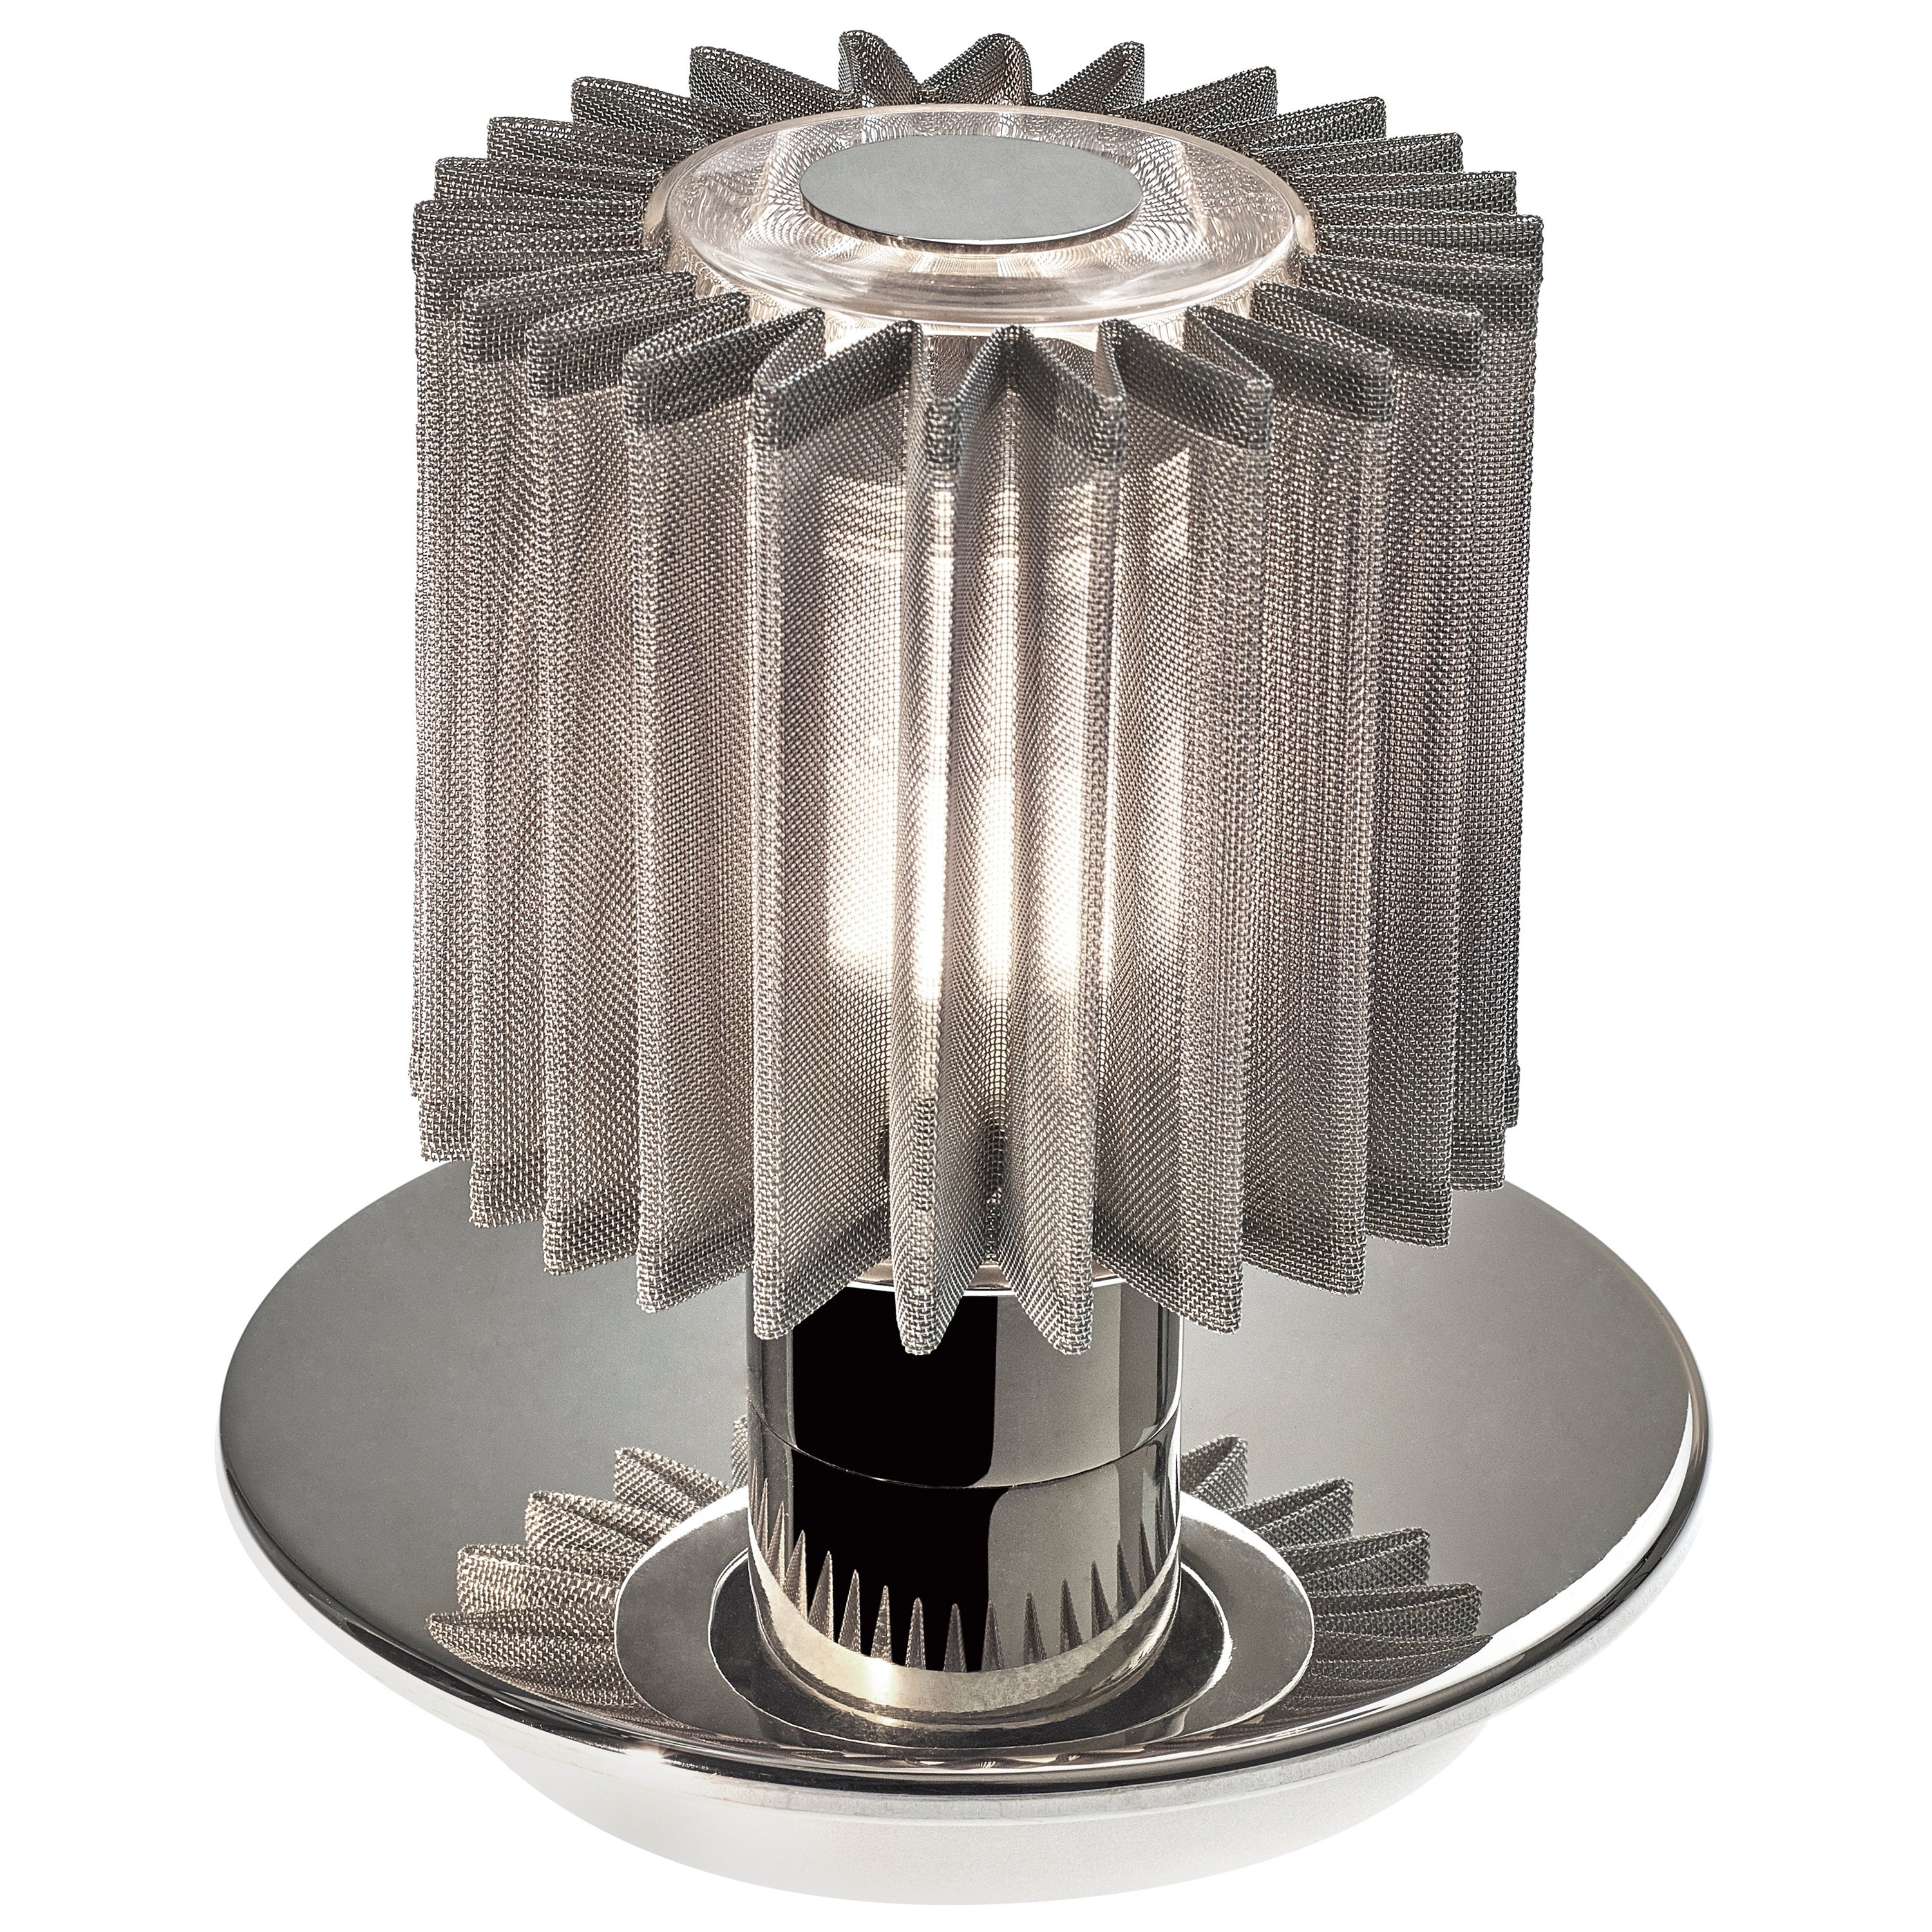 DCW Editions In The Sun Cordless-Tischlampe aus silbernem Stahlgehäuse mit silbernem Netzstoff